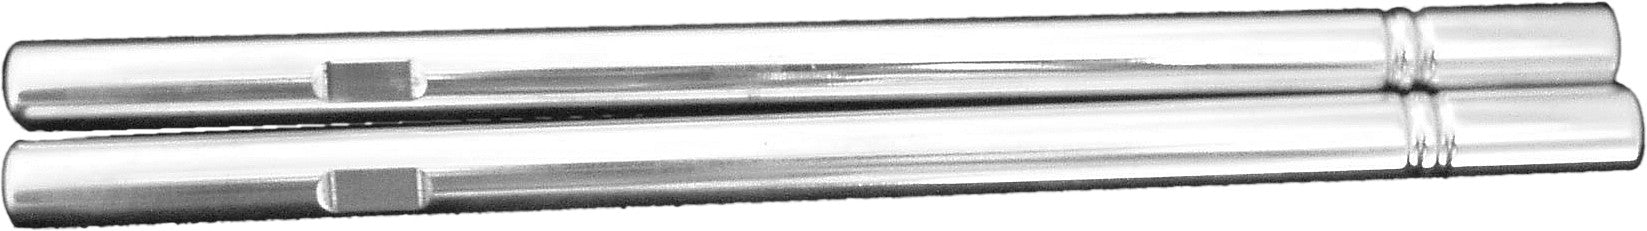 Modquad Tie Rods +2" (Silver) TR1-2PLUS